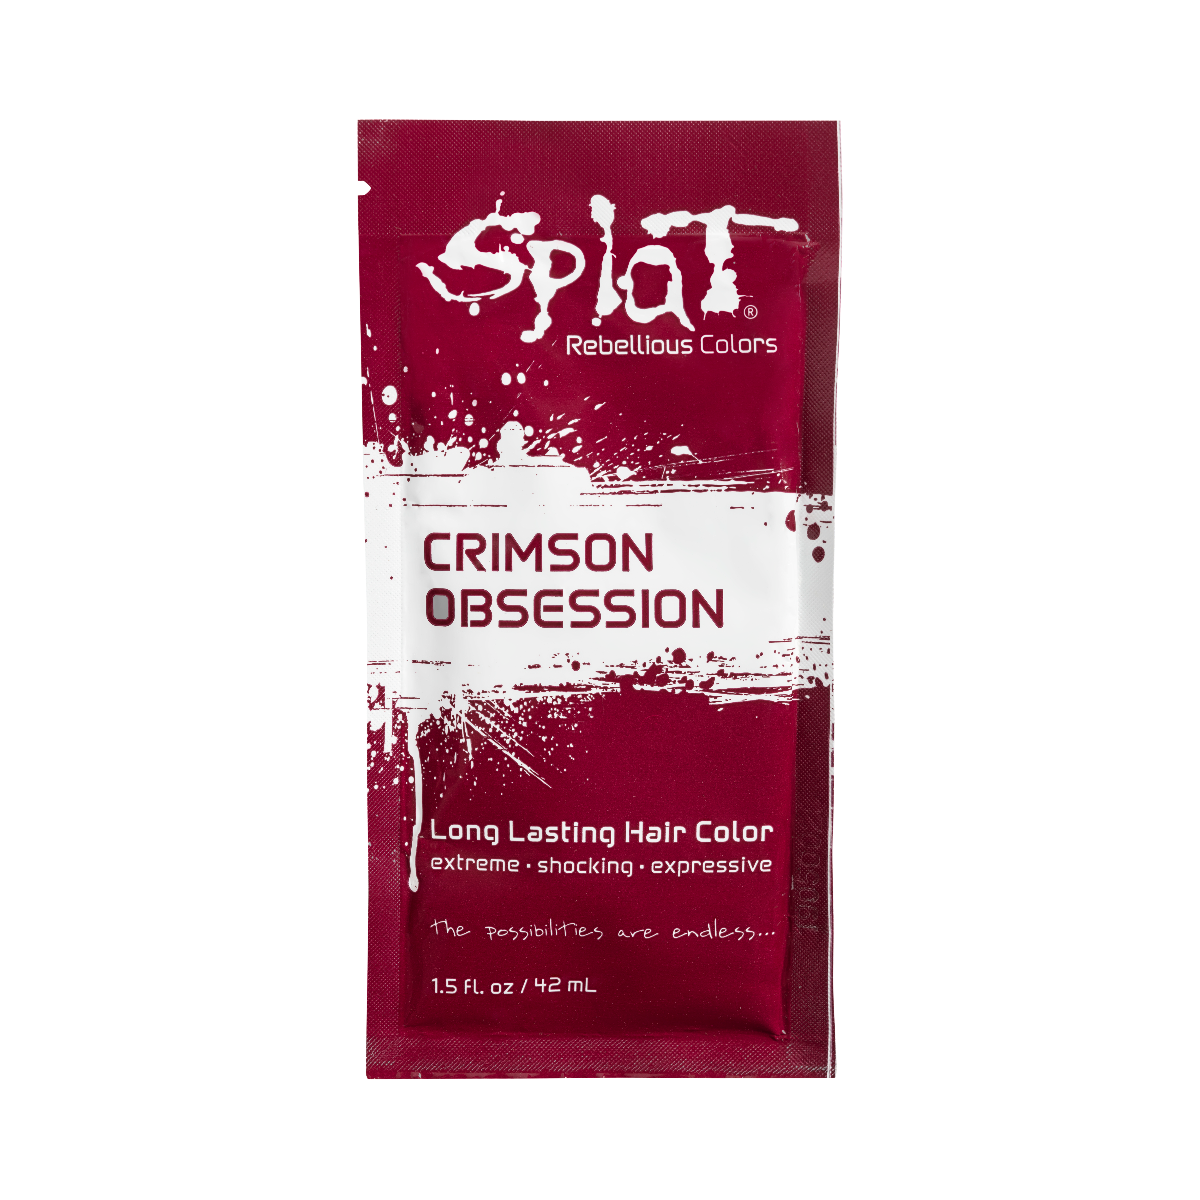 Splat Hair Dye Original Singles Foil Packet Crimson Obsession Red Hair Dye